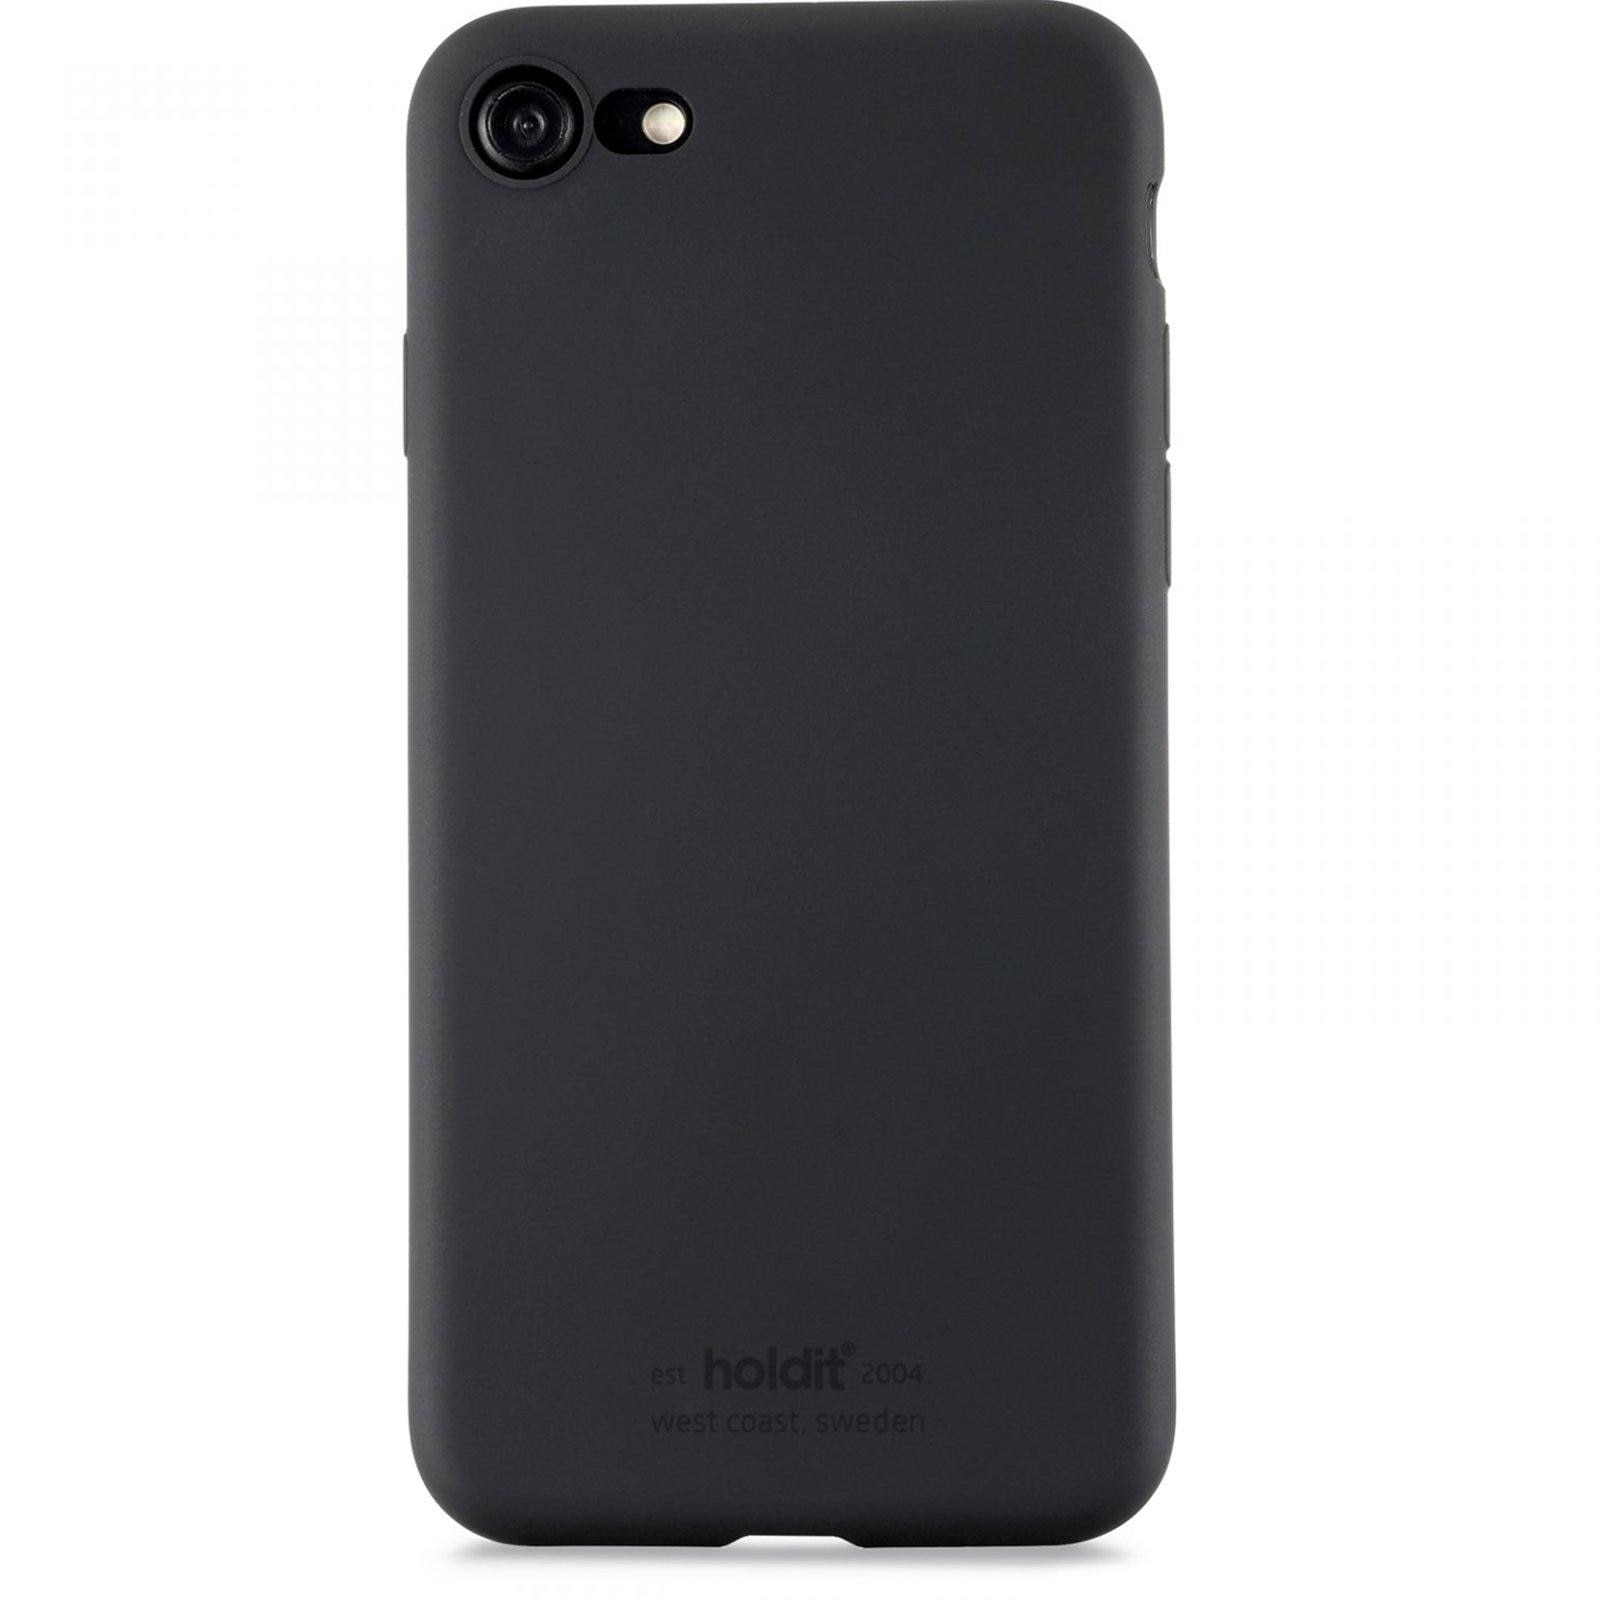 iPhone 8 Silicone Case, Black